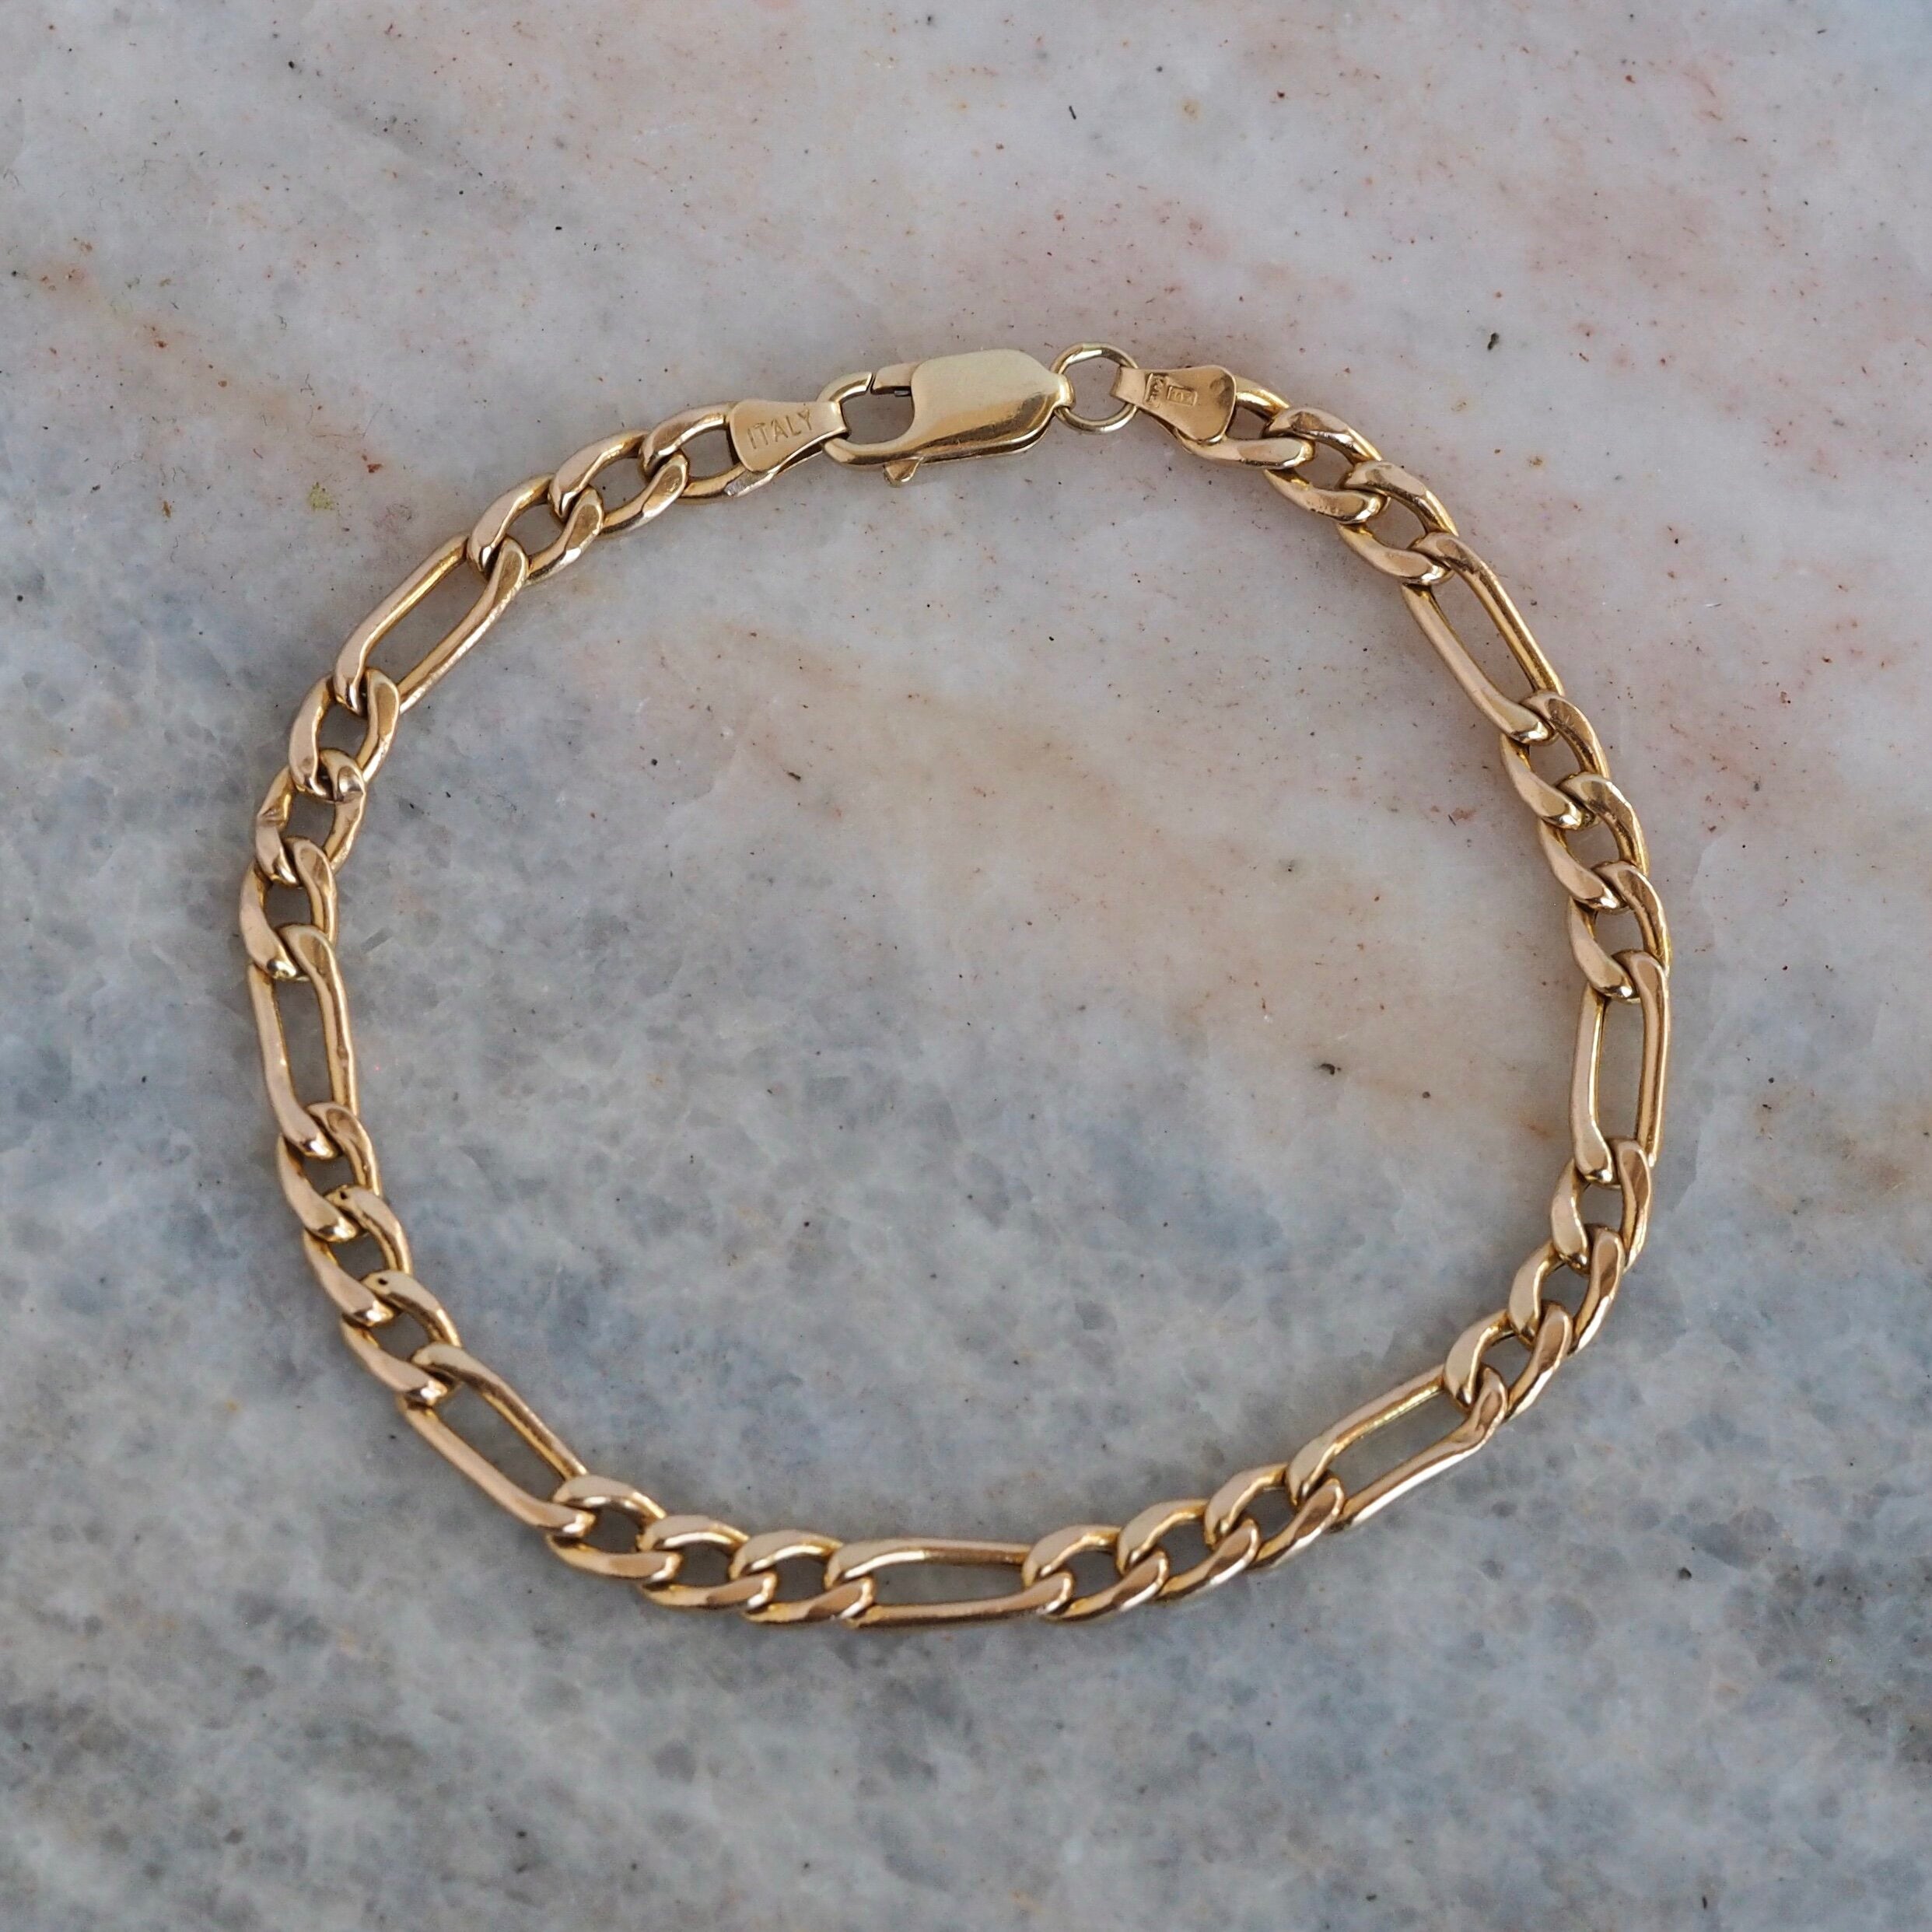 5mm Flexible Hinged 14k Gold Bangle Bracelet - T. Anthony Jewelers